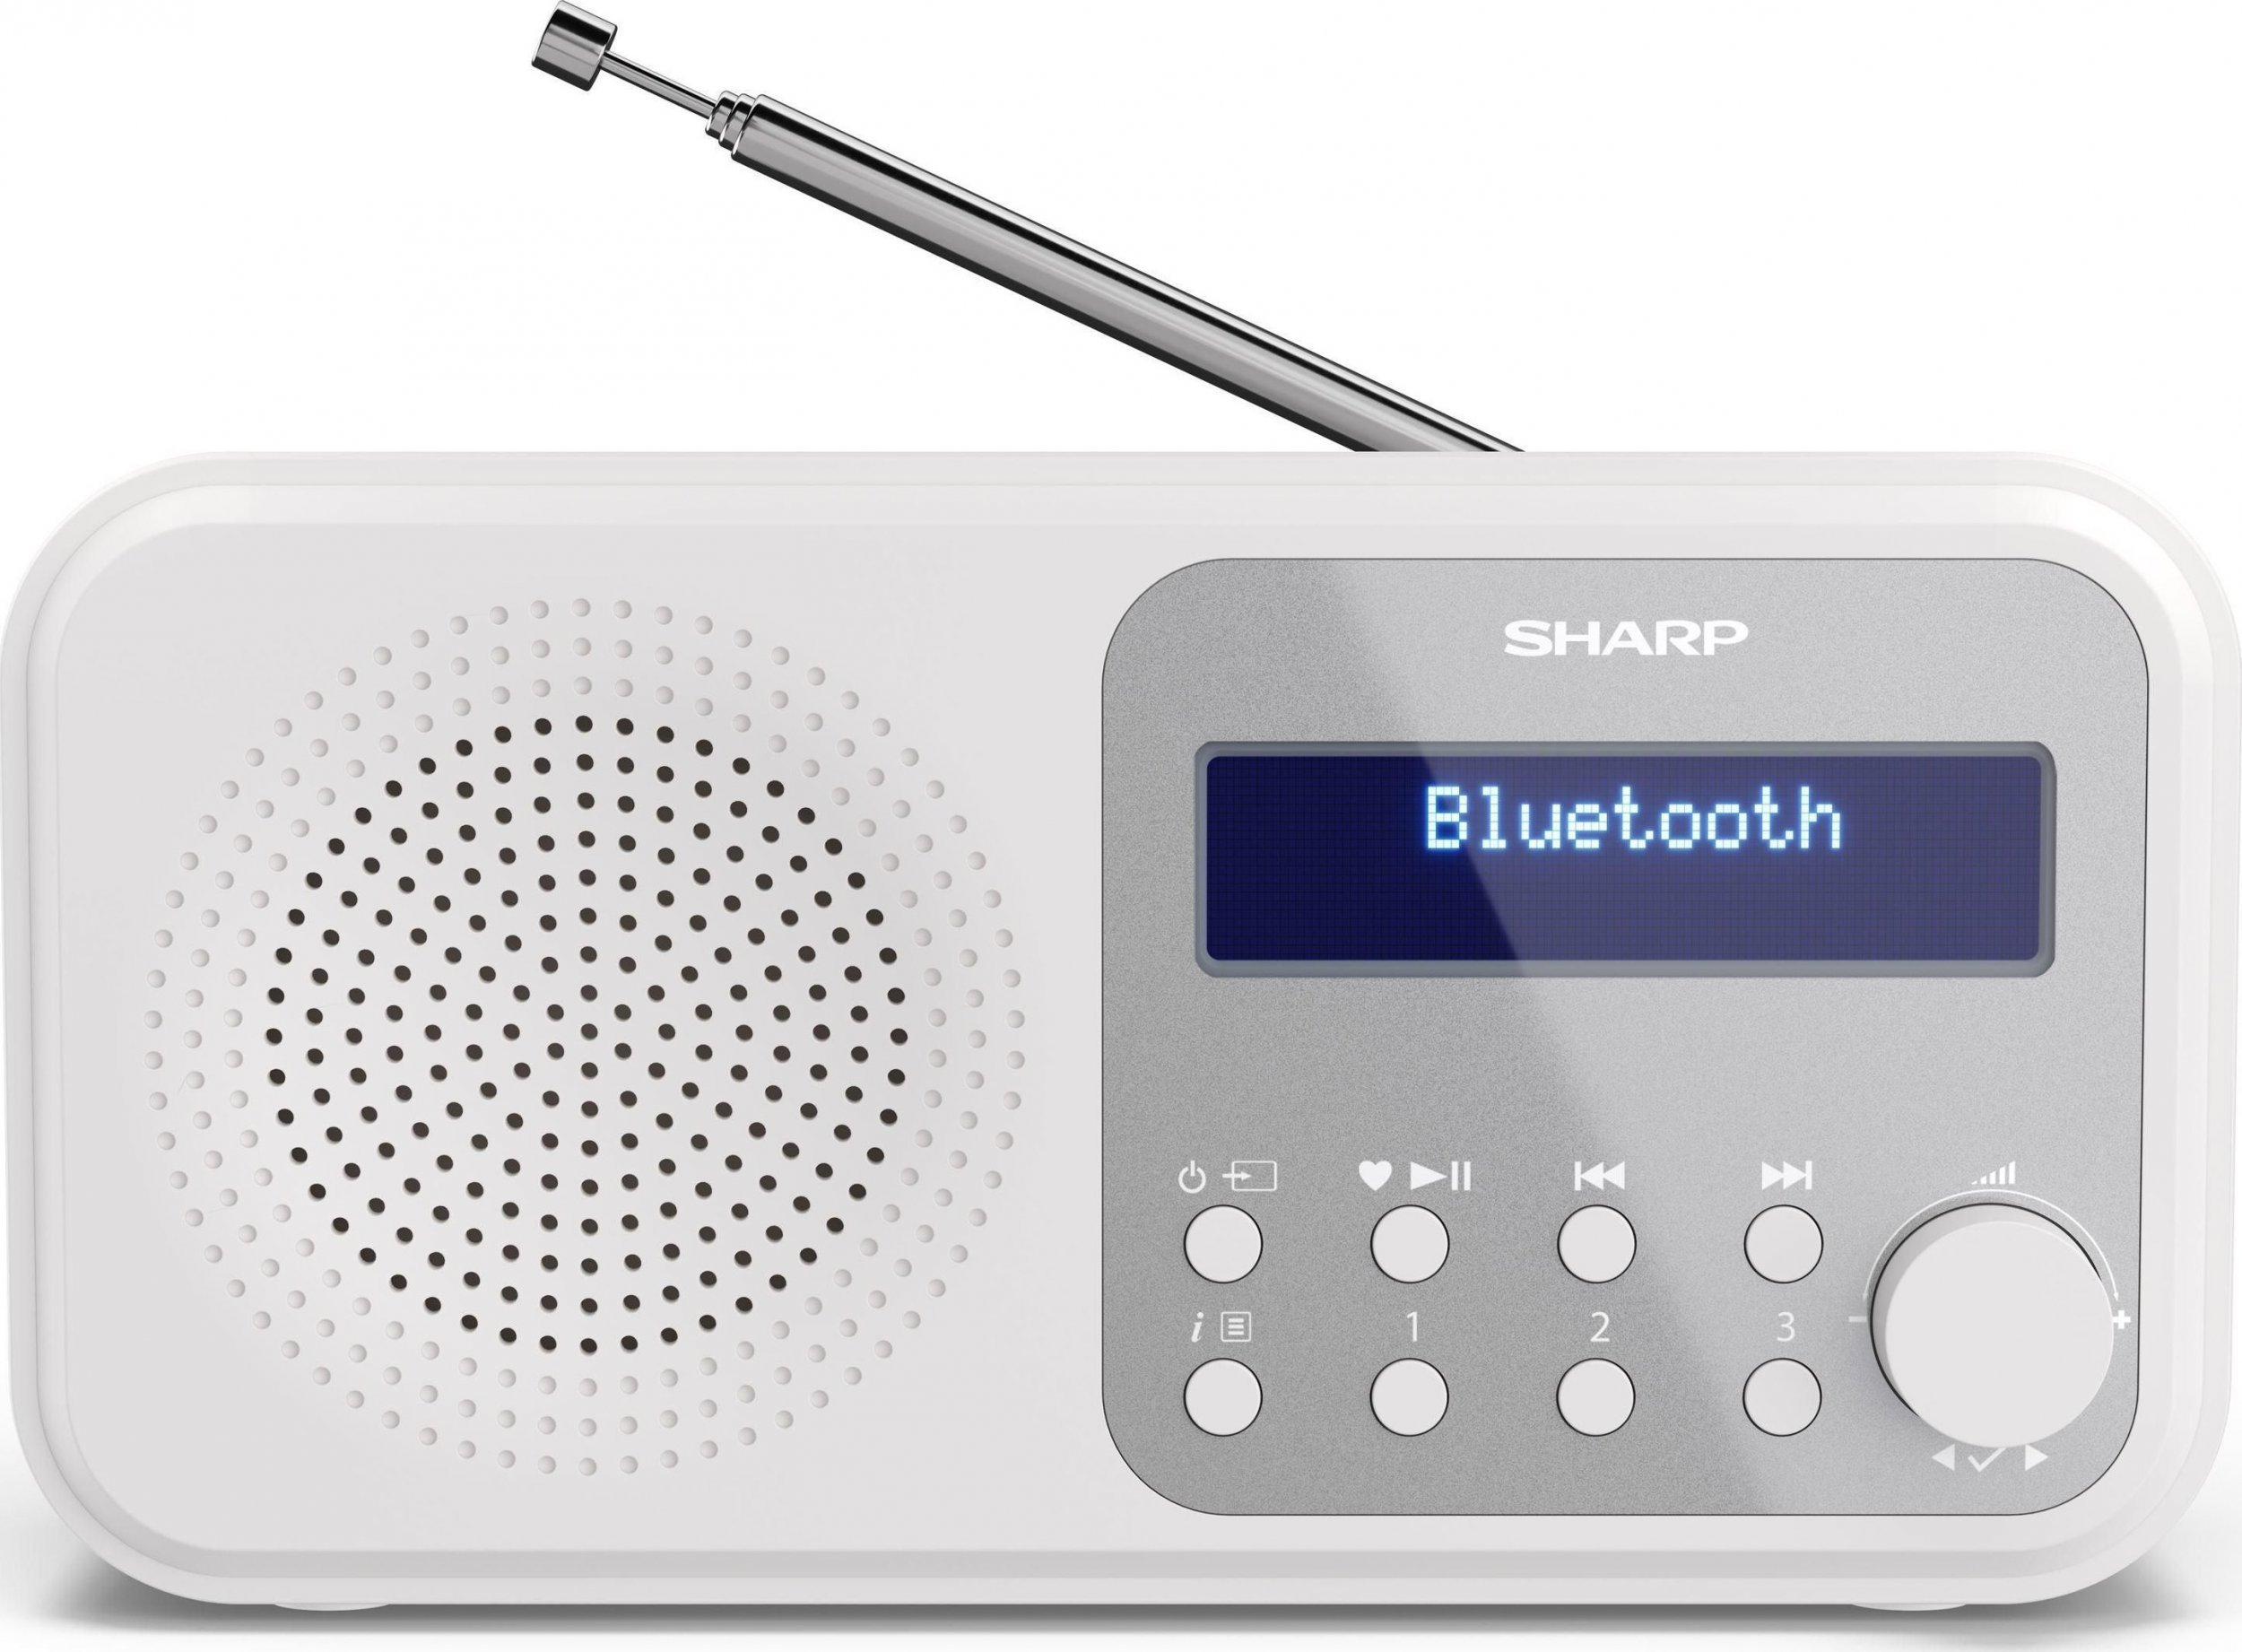 Radio Sharp RO SHARP DR-P420(WH) se referă la un radio fabricat de compania japoneză Sharp, modelul DR-P420(WH). Acesta este disponibil în culorile alb și a fost proiectat să ofere o experiență de ascultare înaltă de calitate prin intermediul radioul